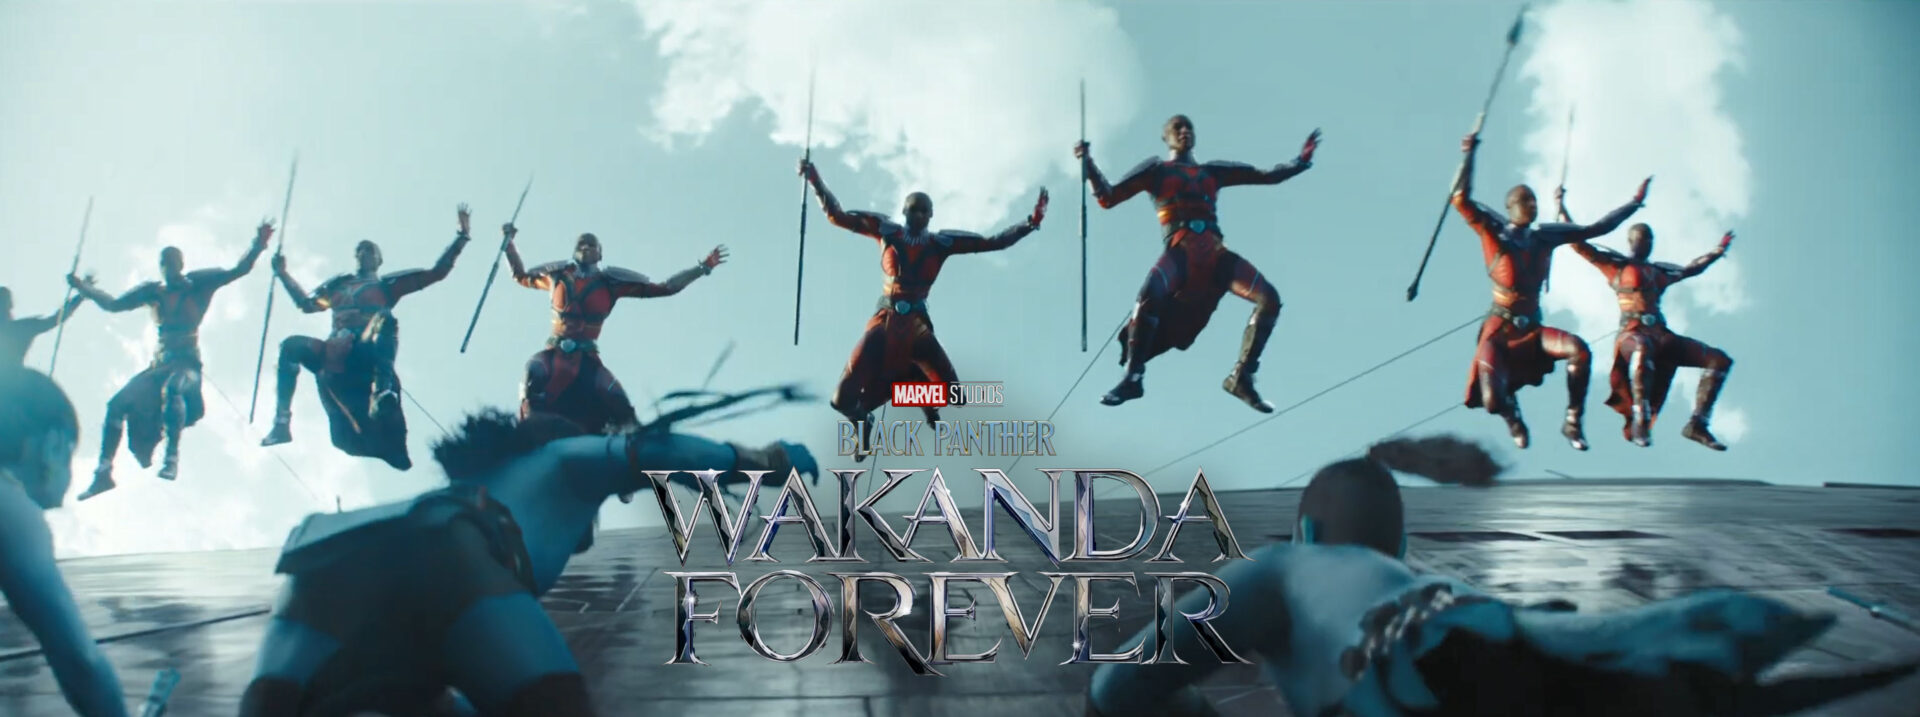 wakanda forever teaser trailer banner